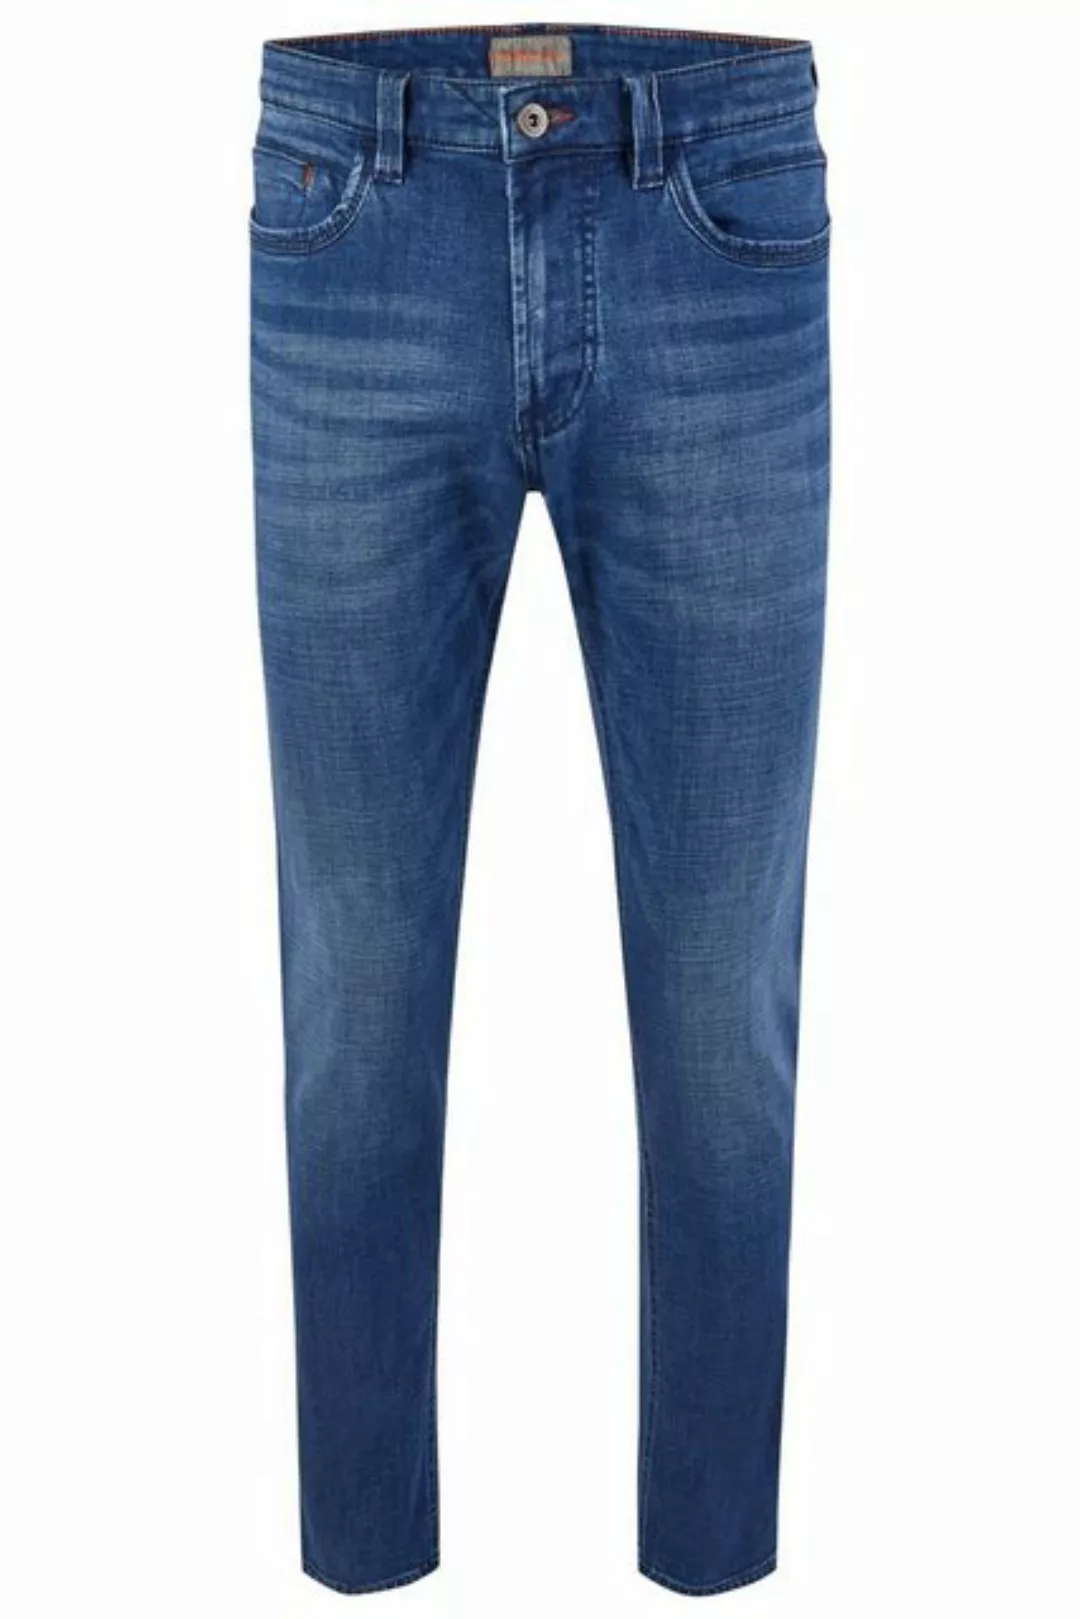 Hattric 5-Pocket-Jeans HATTRIC HARRIS new mid blue 688495 9690.47 günstig online kaufen